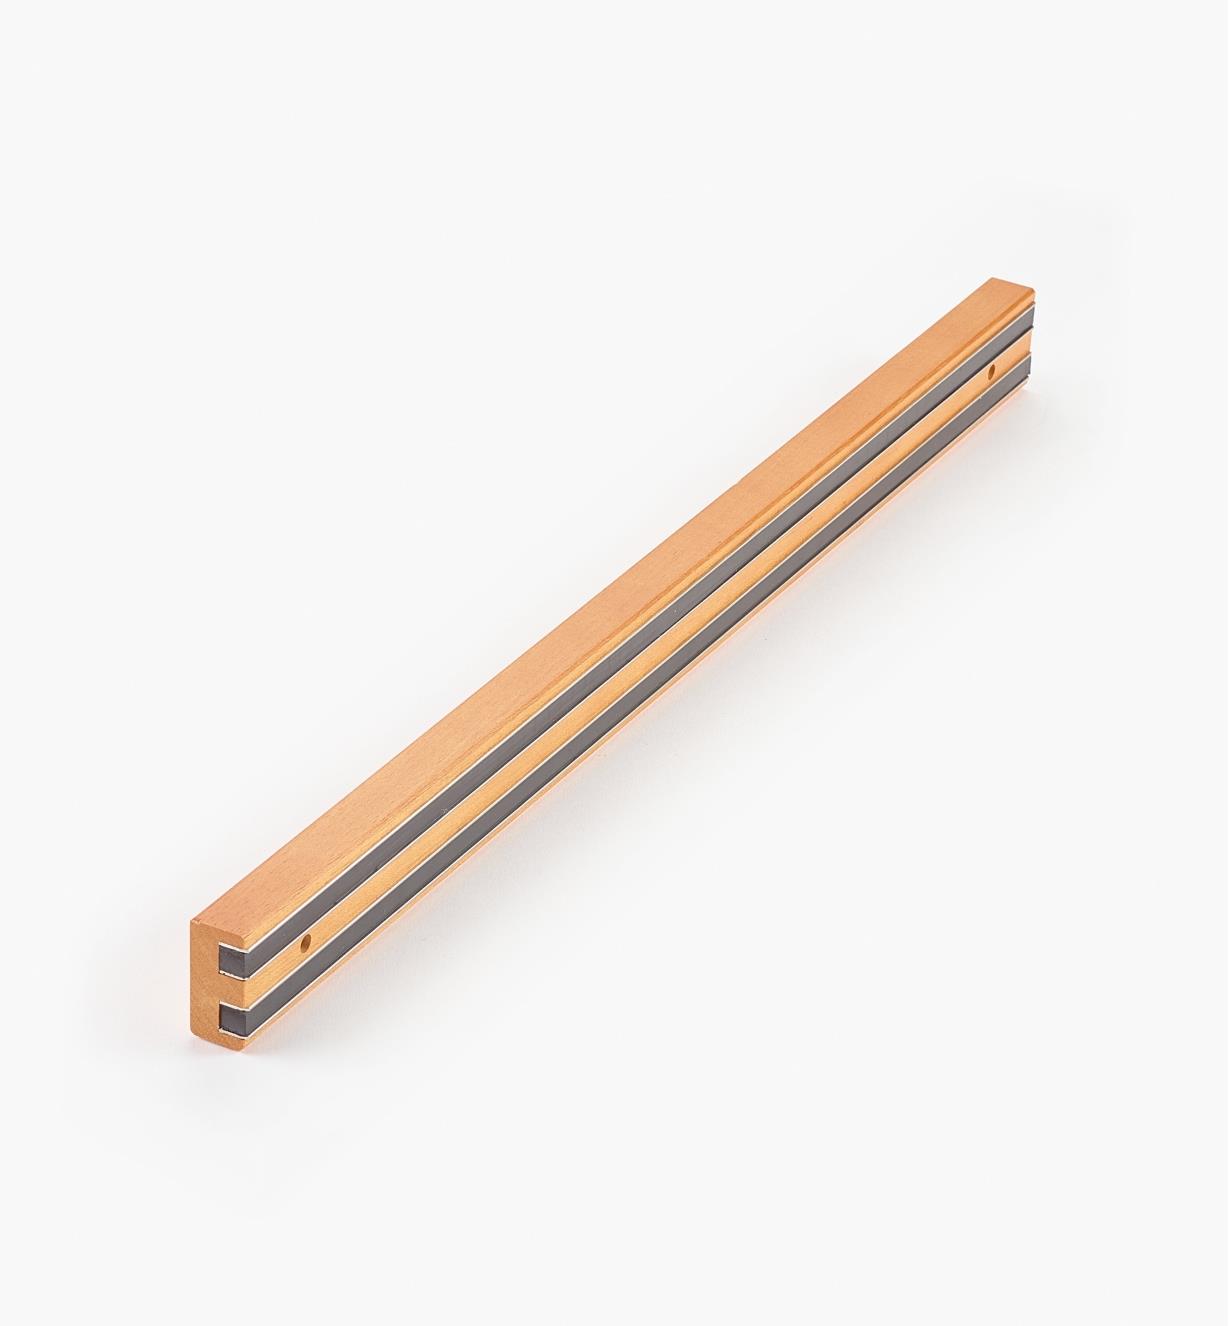 93K7524 - Light-Duty Magnetic Tool Bar, 23 3/4"